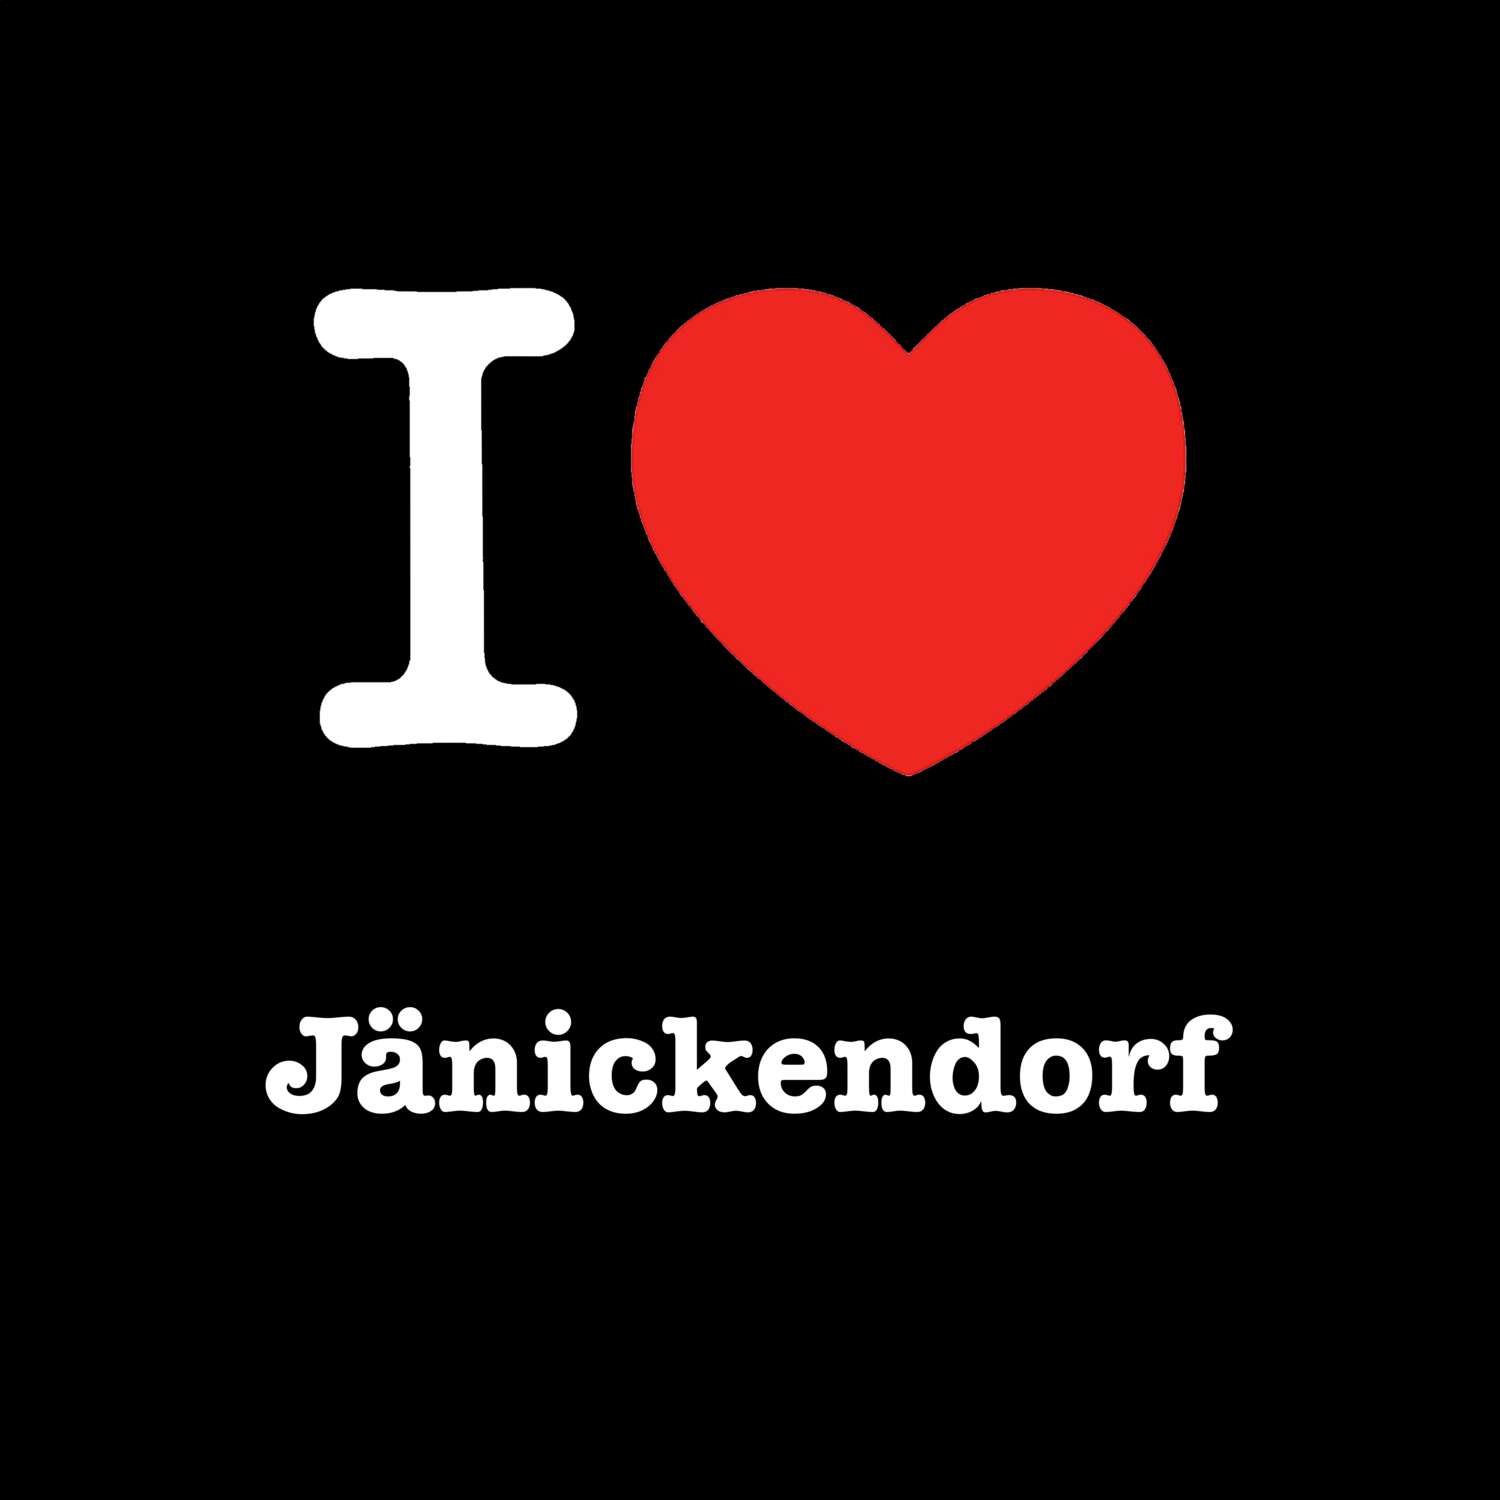 Jänickendorf T-Shirt »I love«